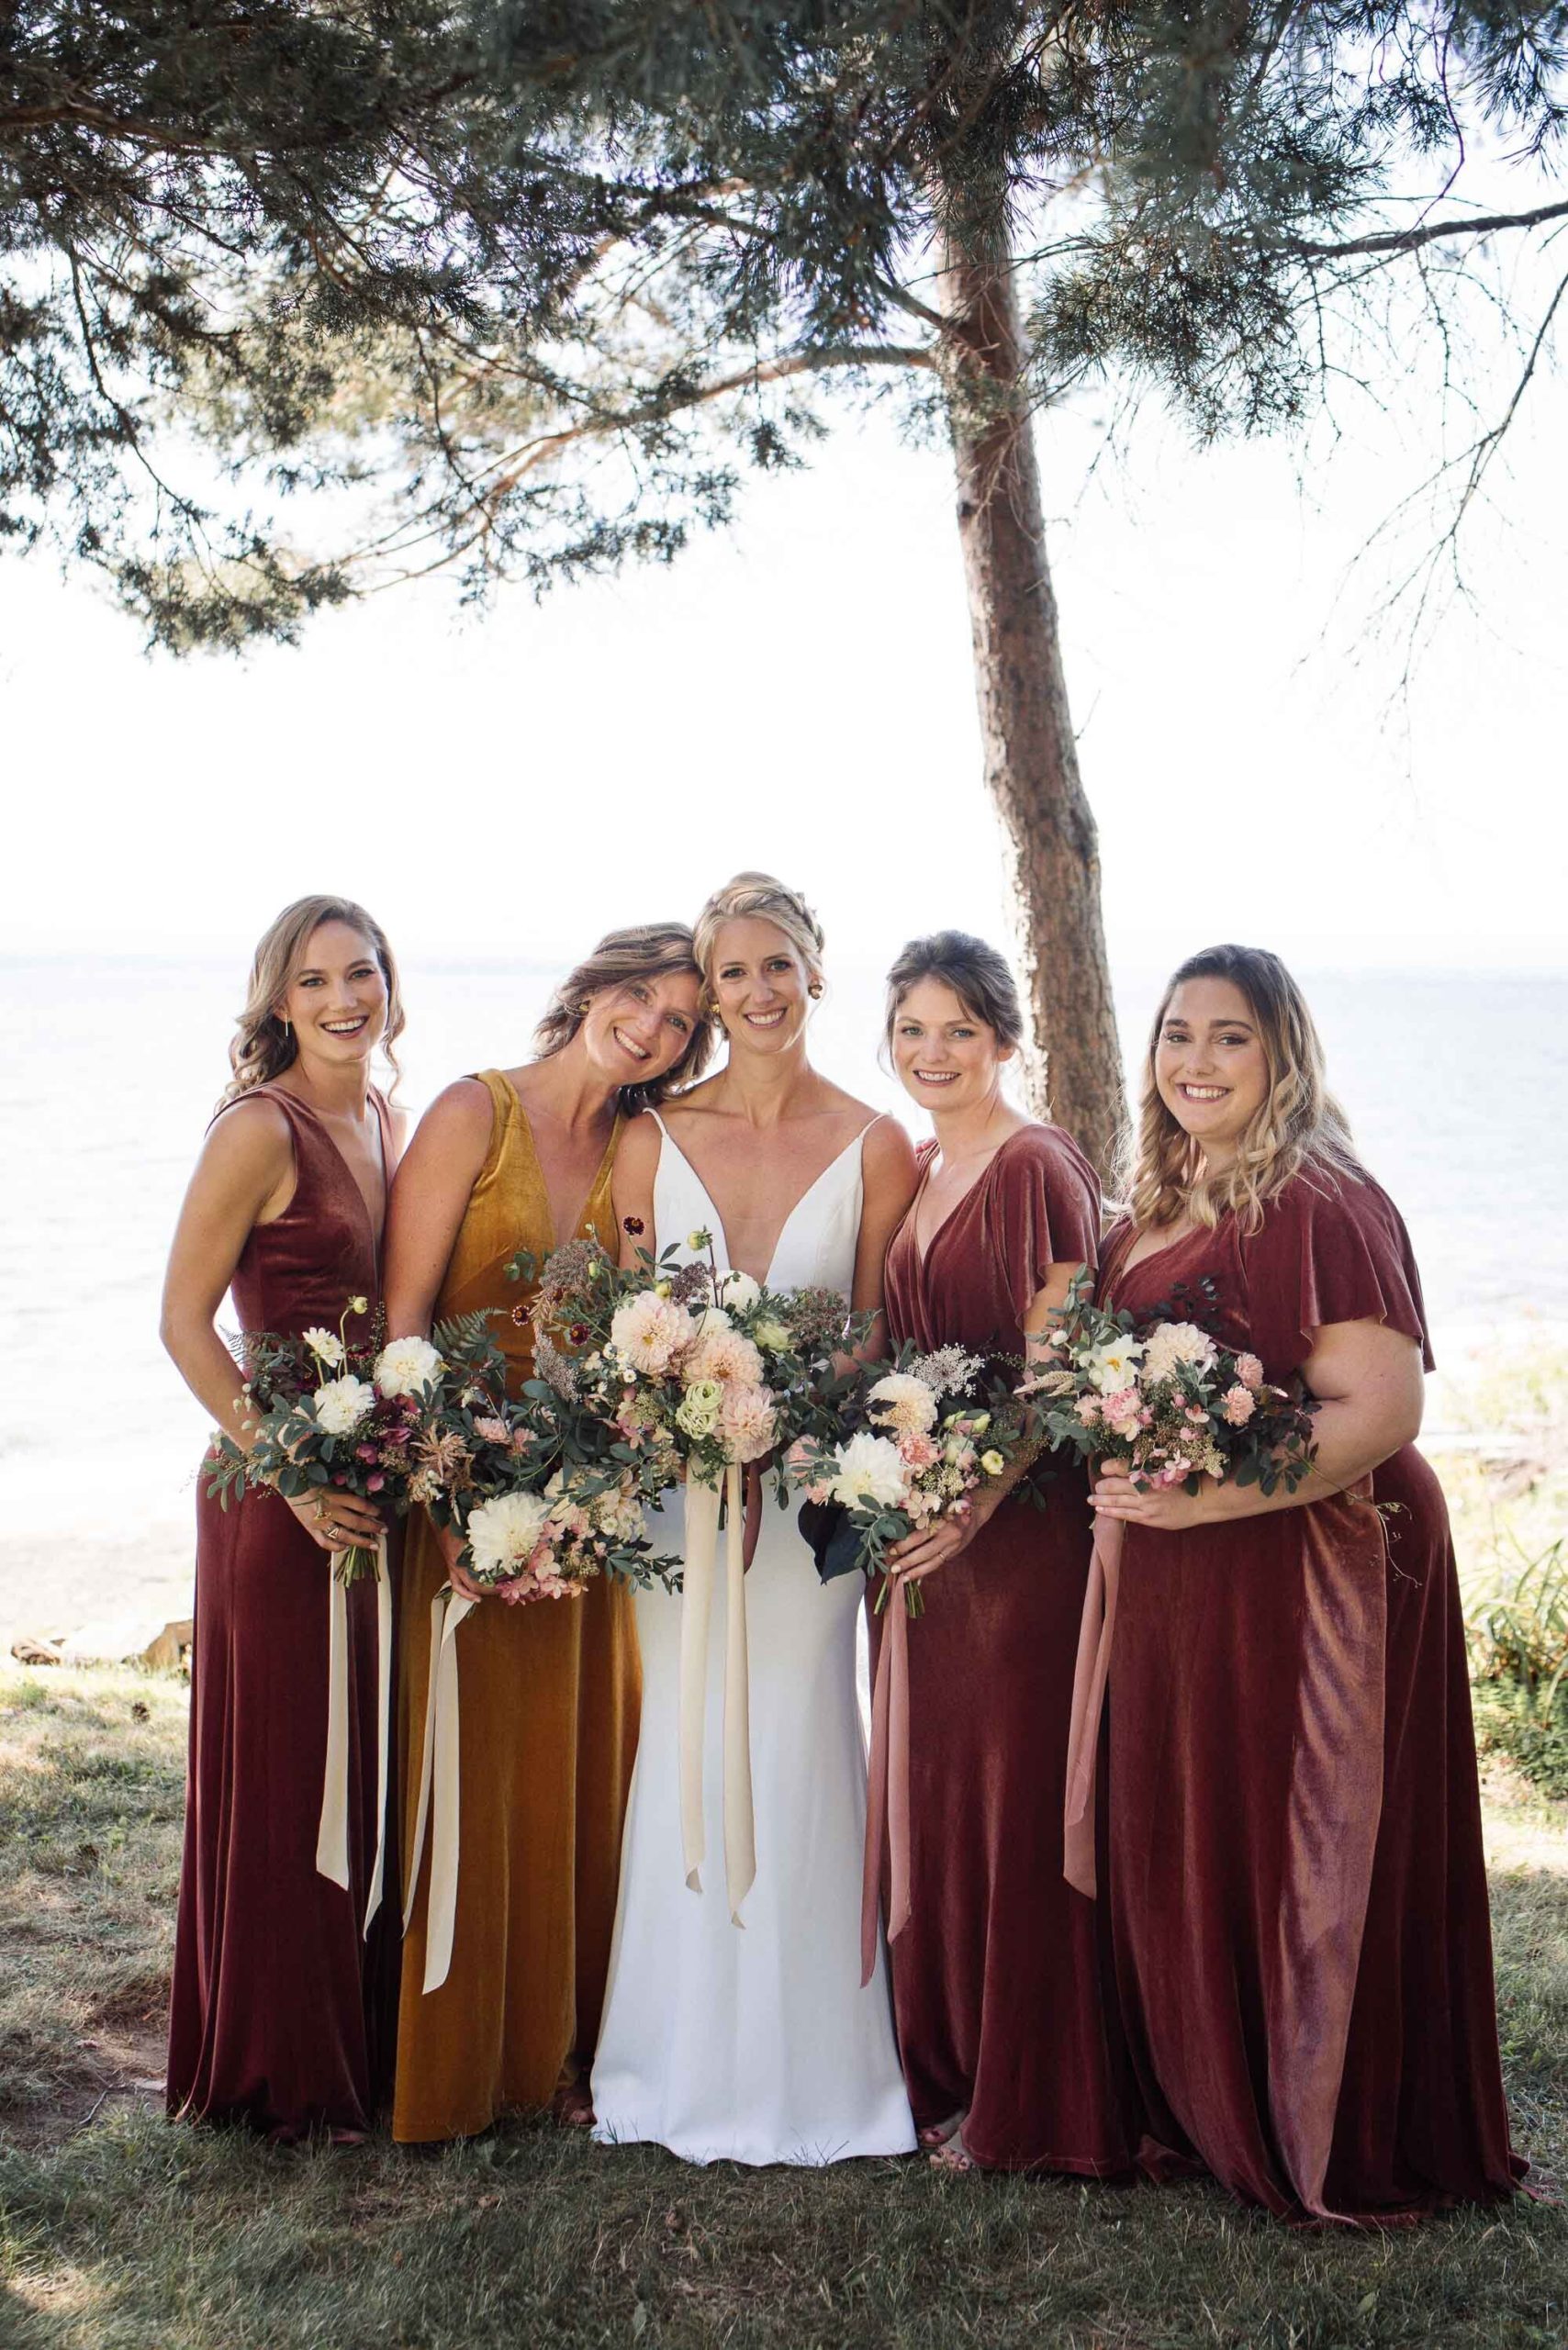 Velvet rose bridesmaids dresses